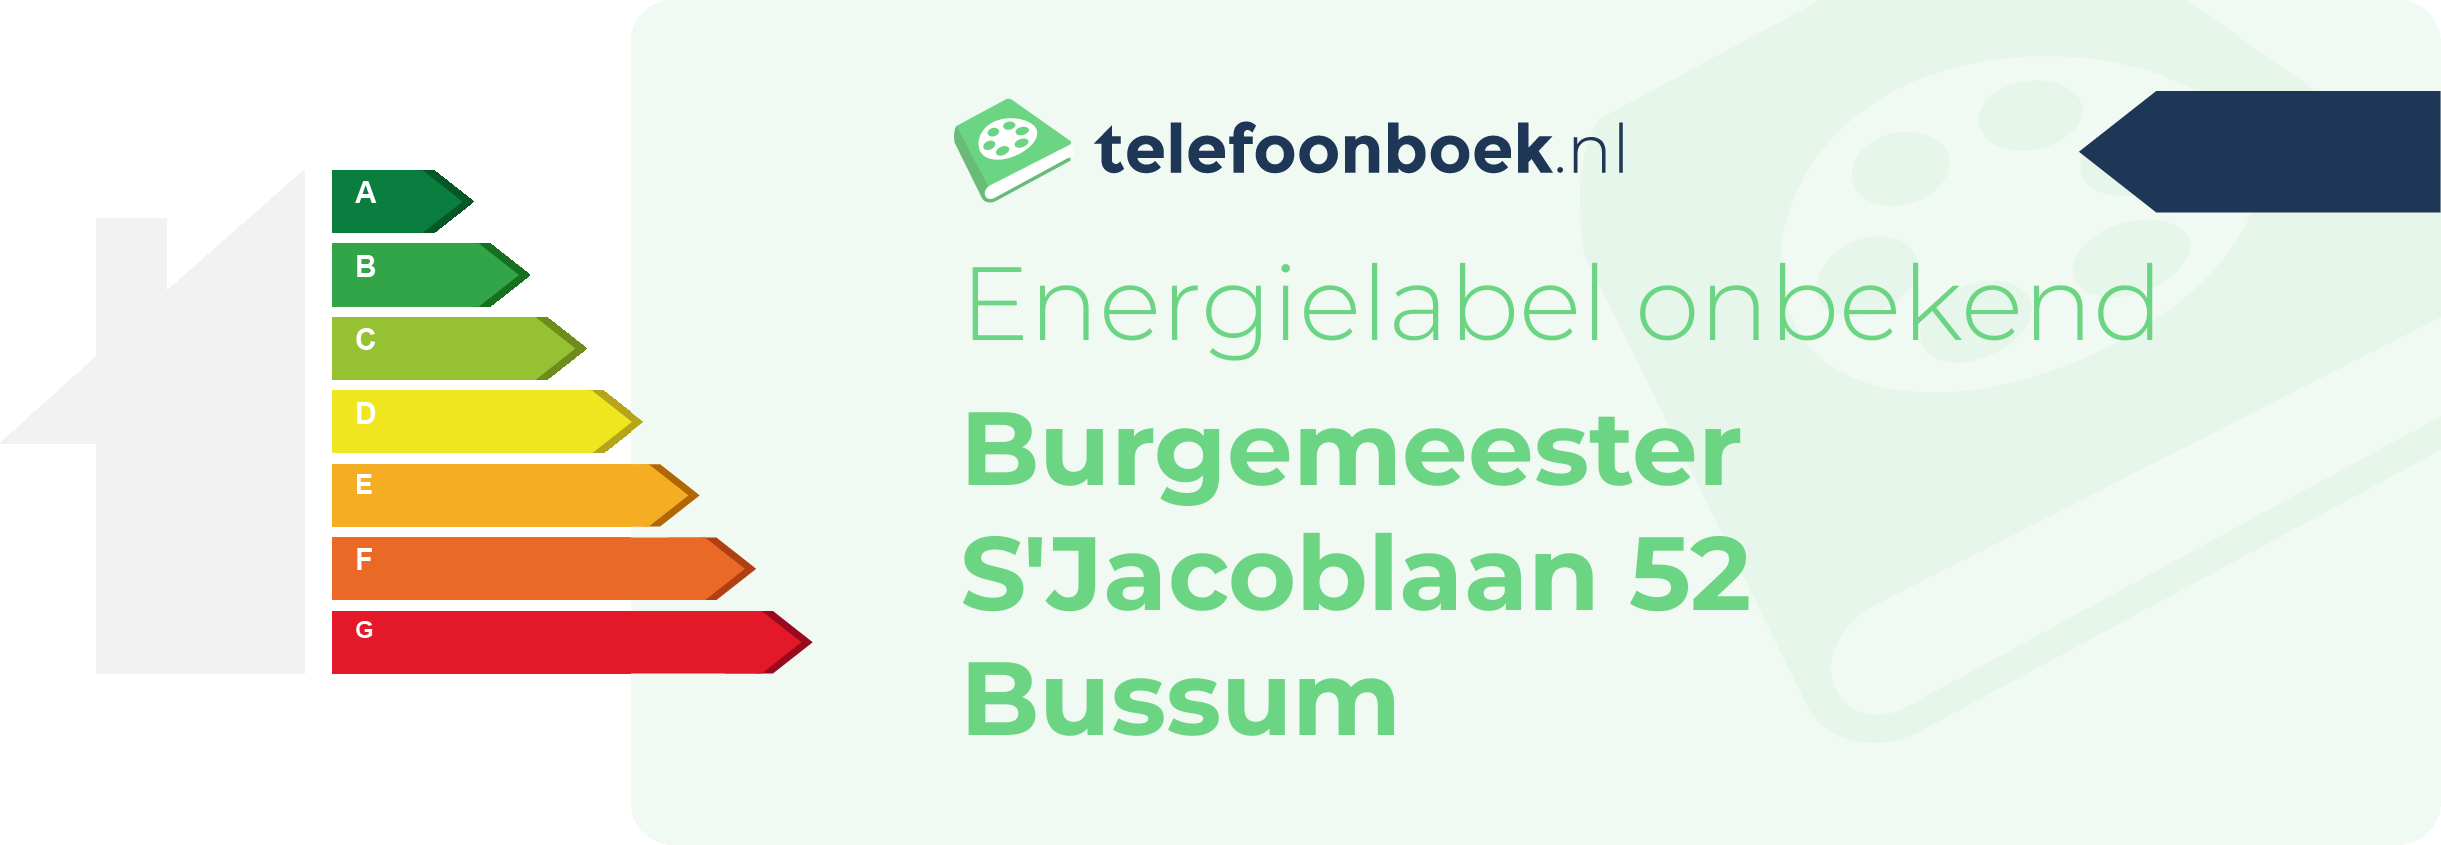 Energielabel Burgemeester S'Jacoblaan 52 Bussum